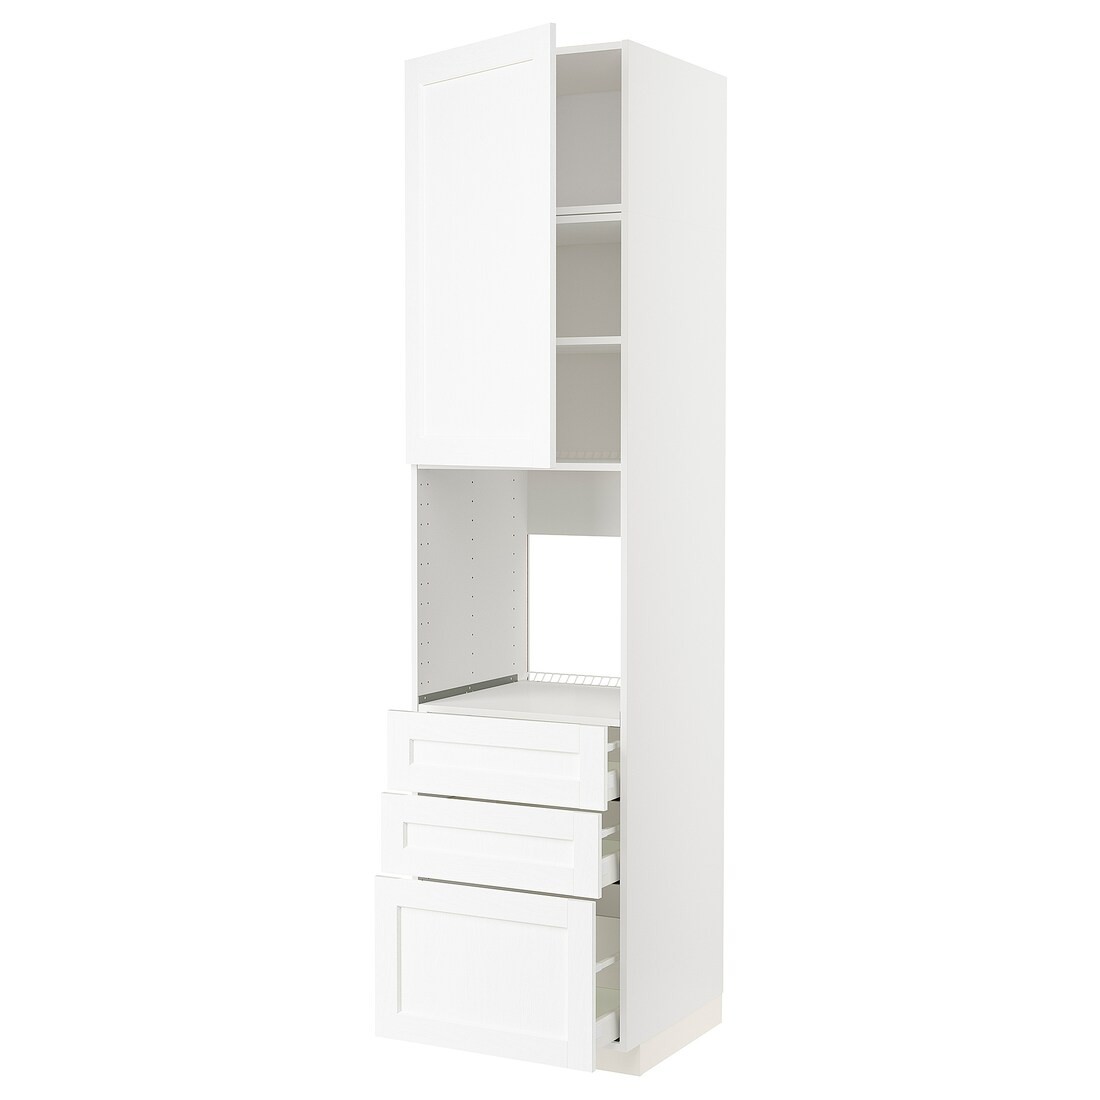 METOD МЕТОД / MAXIMERA МАКСИМЕРА Высокий шкаф для духовки, белый Enköping / белый имитация дерева, 60x60x240 см